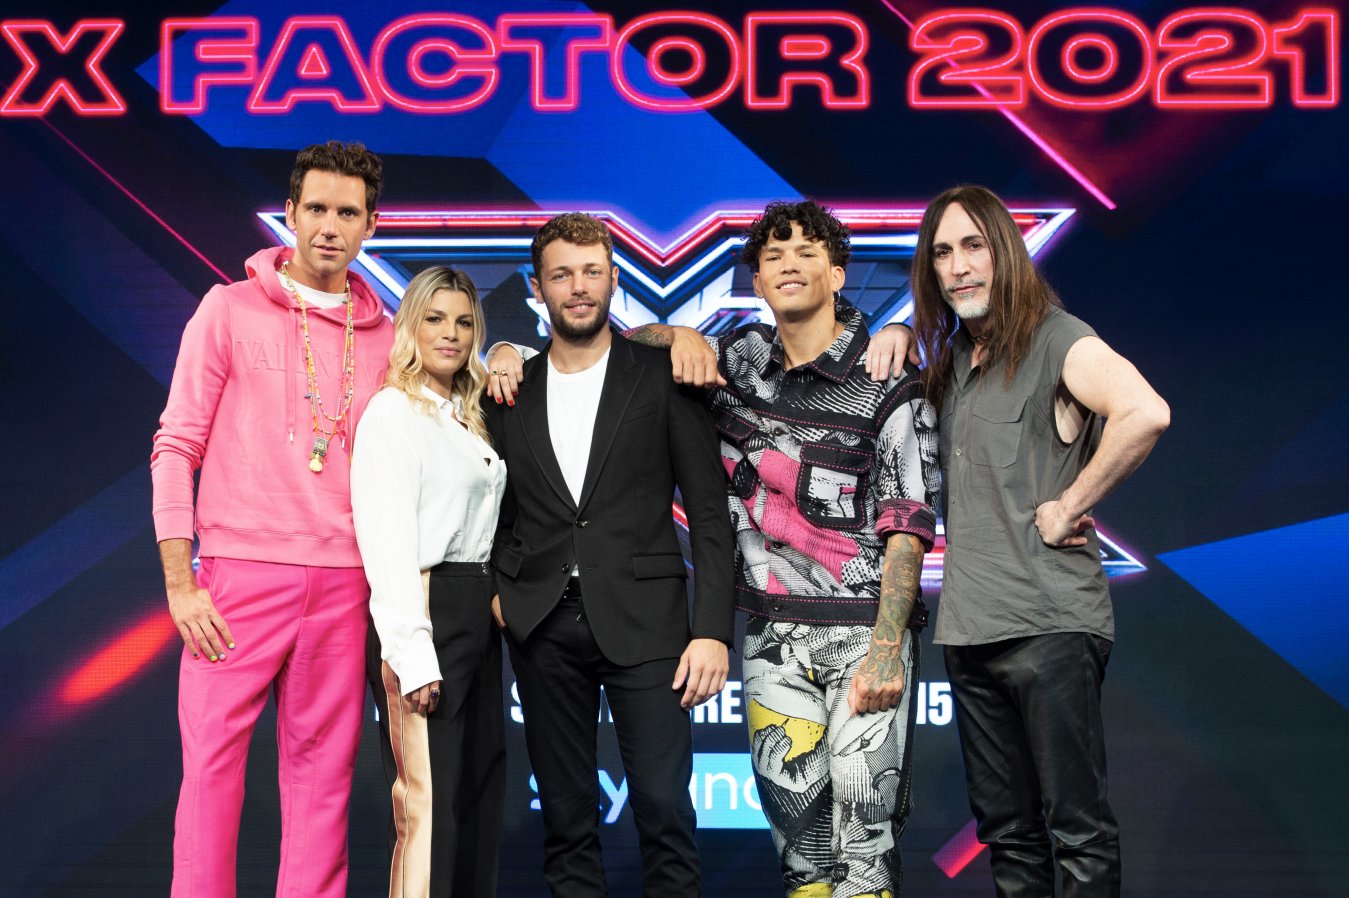 X Factor 2021, al via le Audizioni su Sky Uno e NOW (esordio anche su TV8)